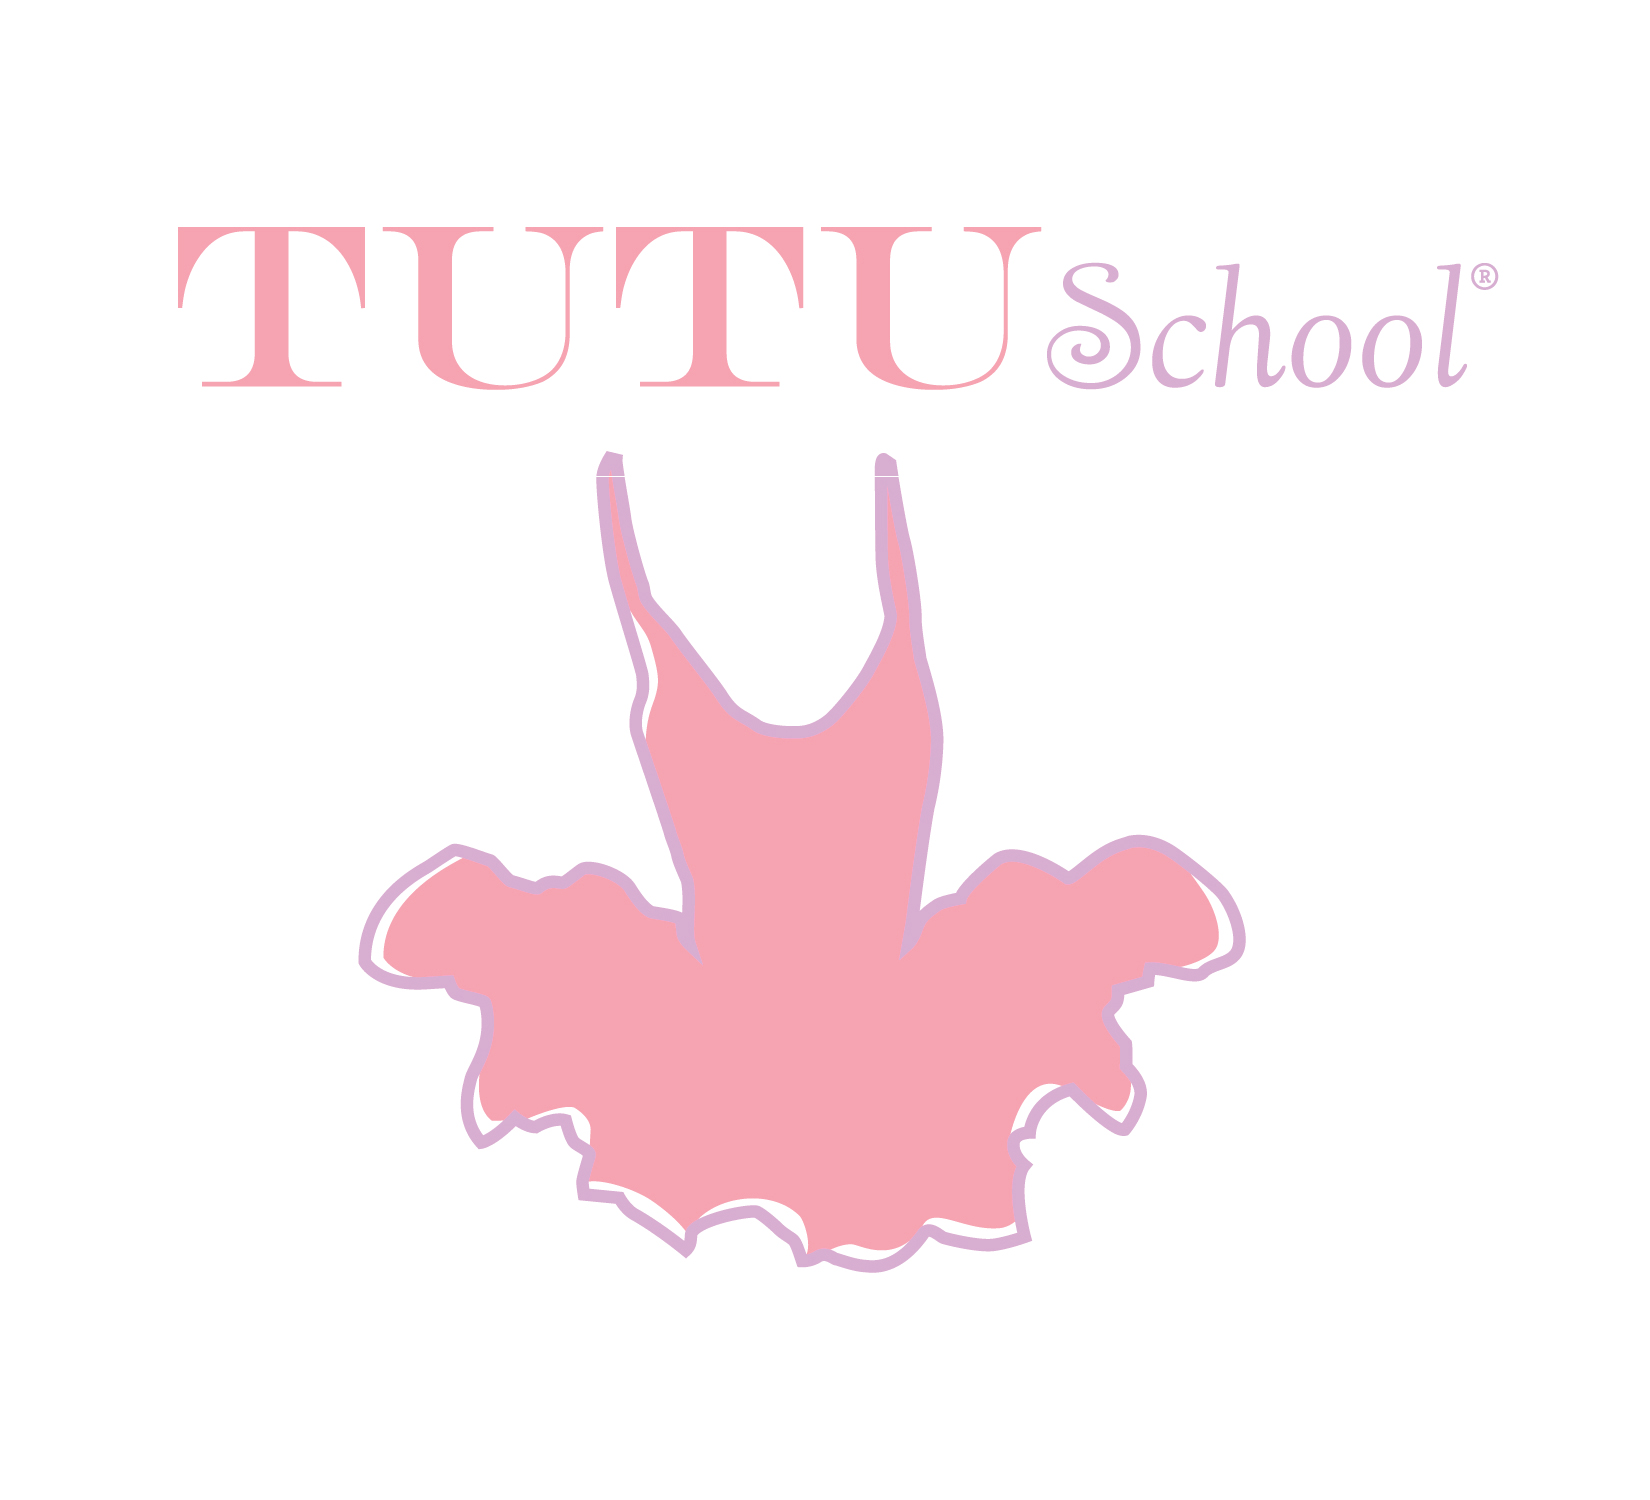 Tutu School – San Jose